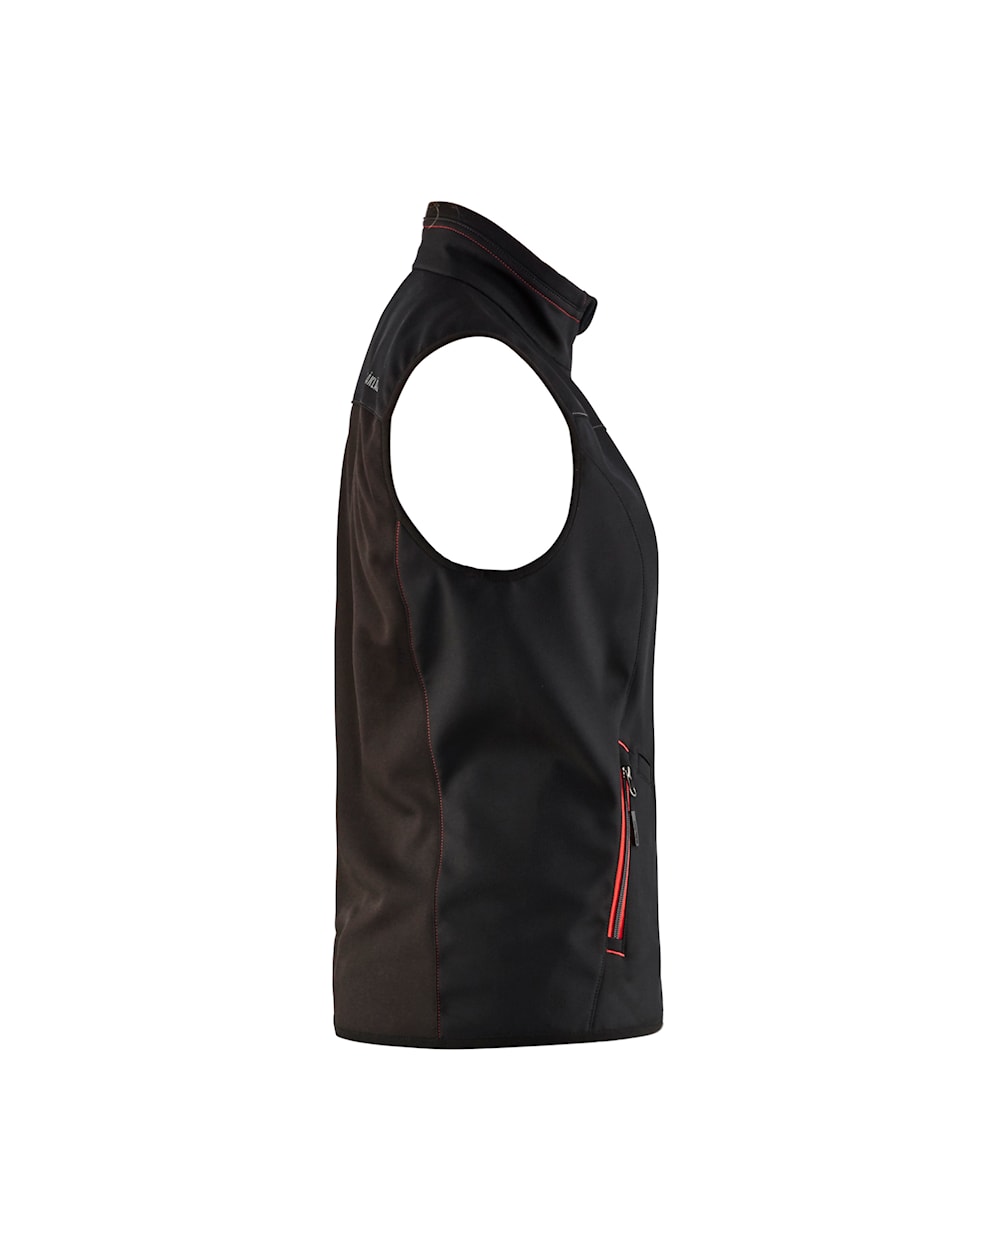 Blaklader Women's Softshell Vest 3851 #colour_black-red